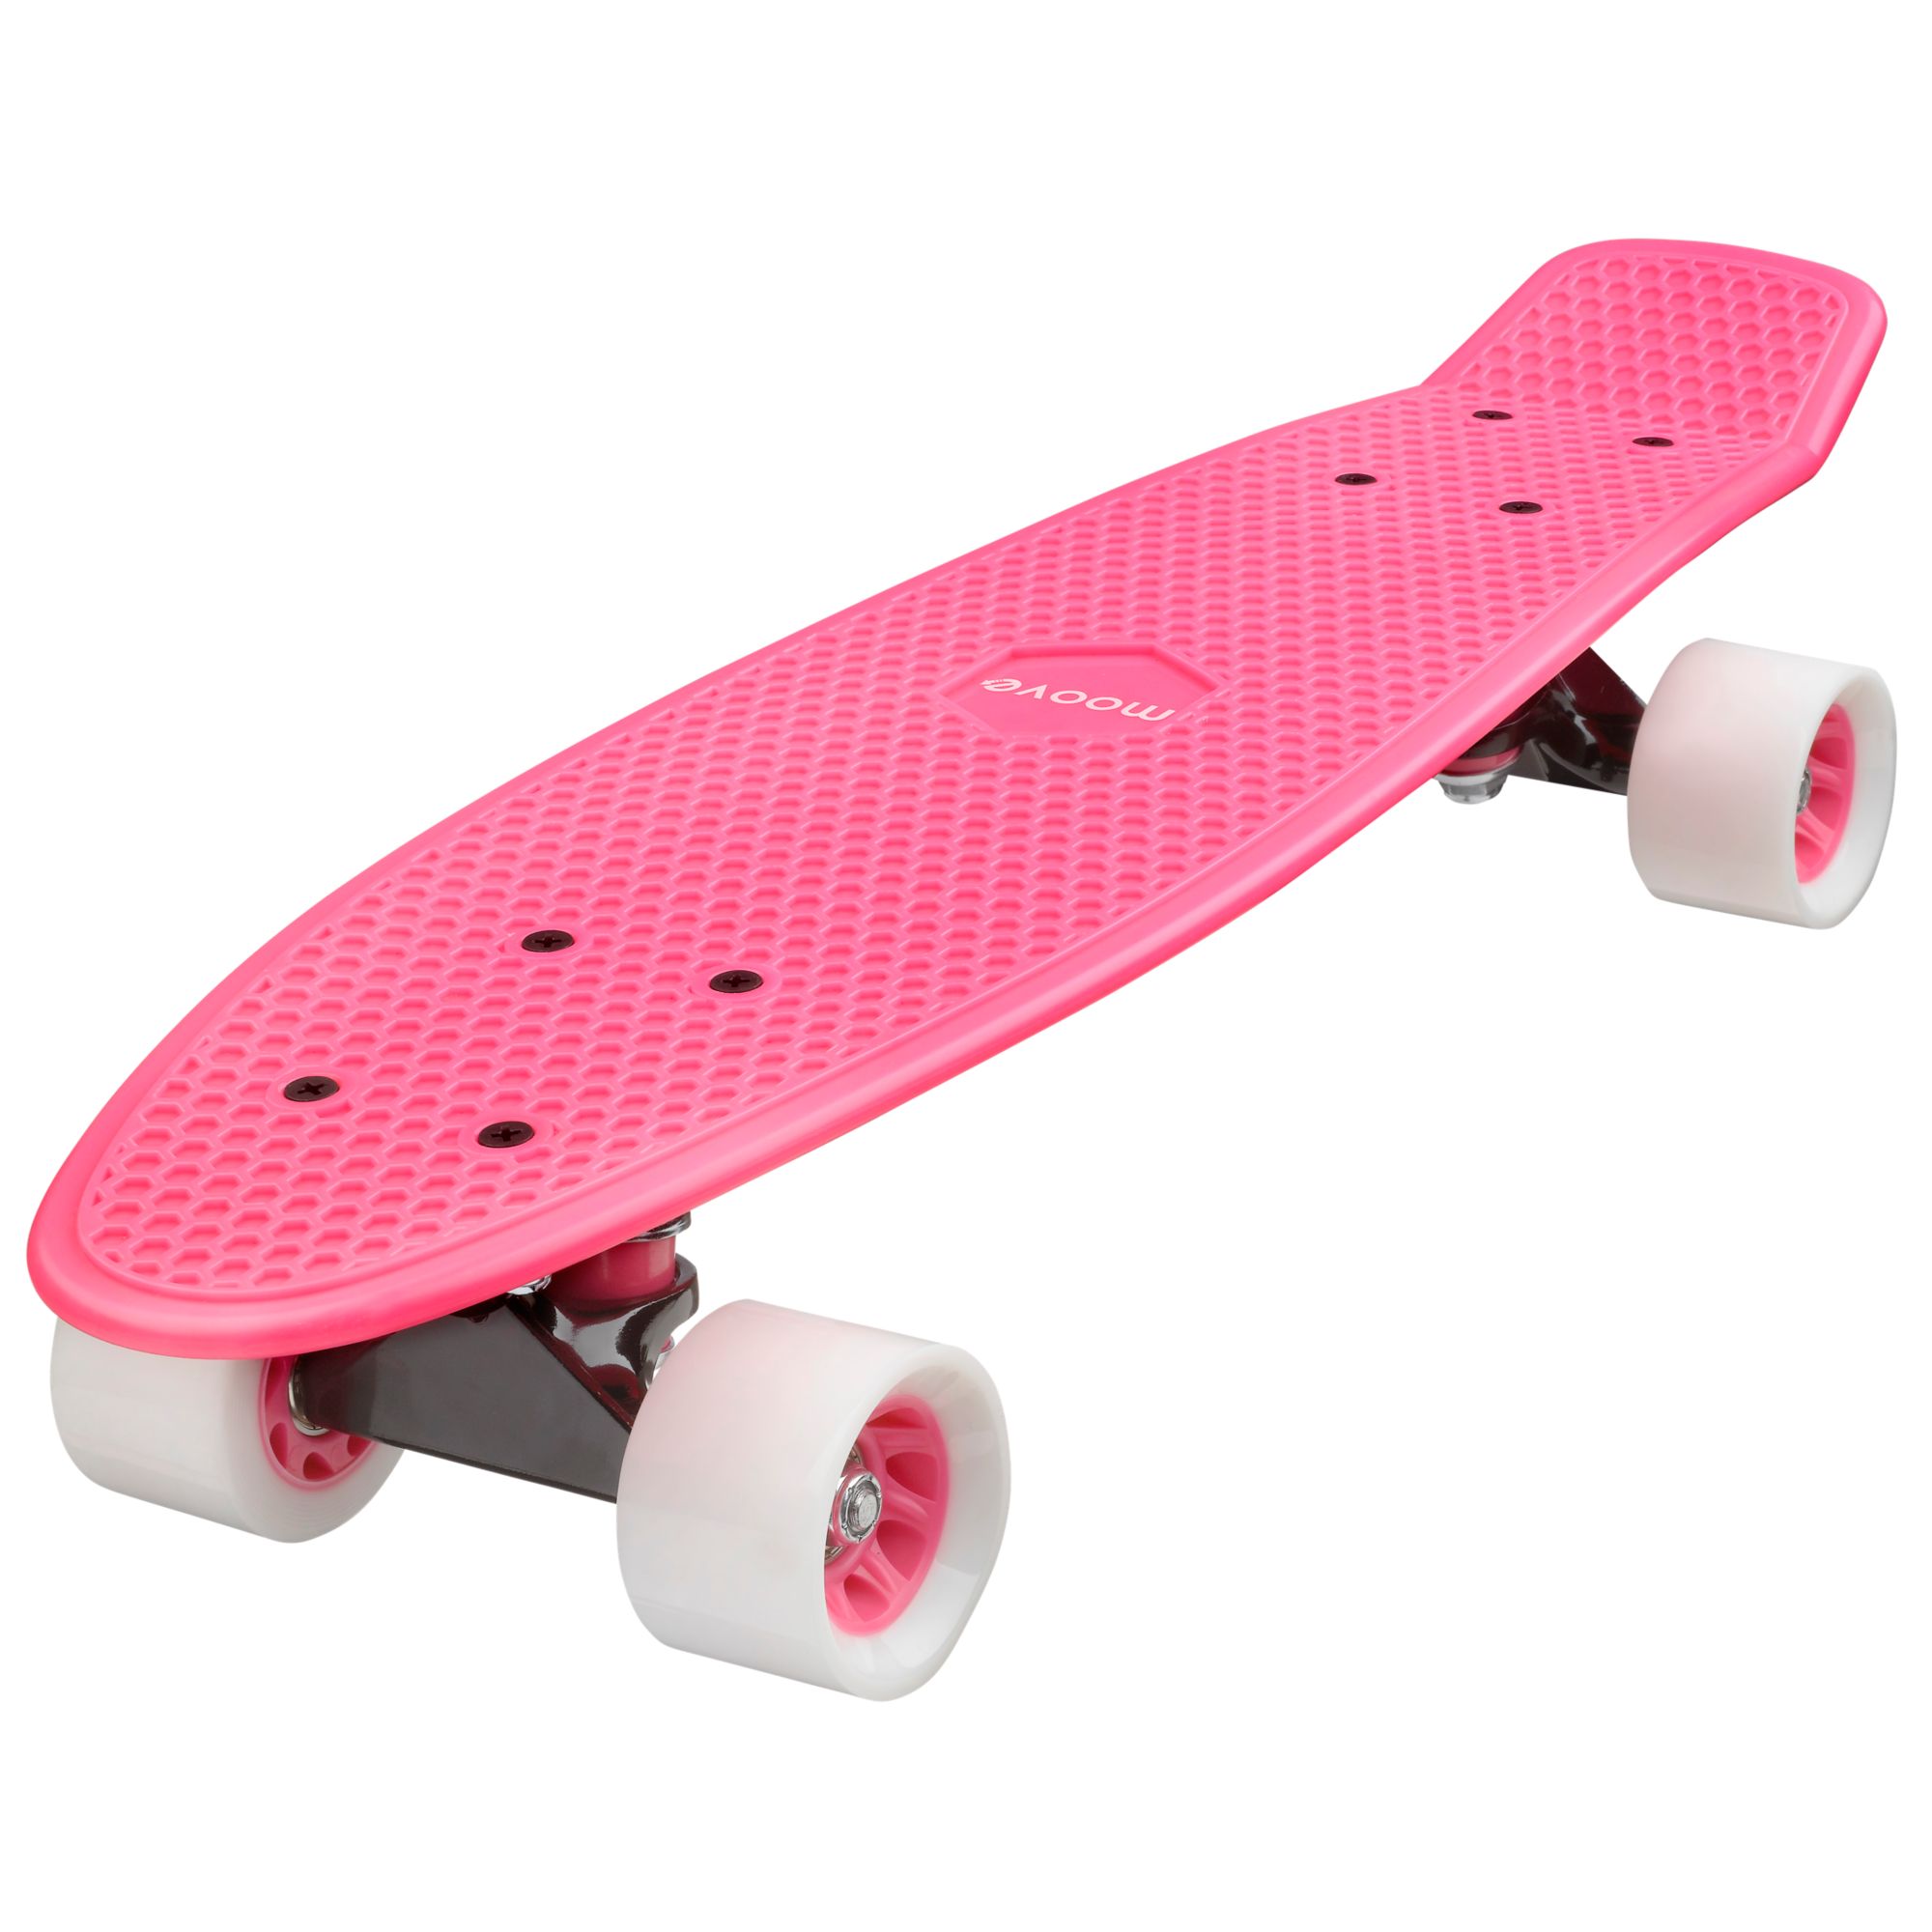 Candyboard Candyboard Skateboard